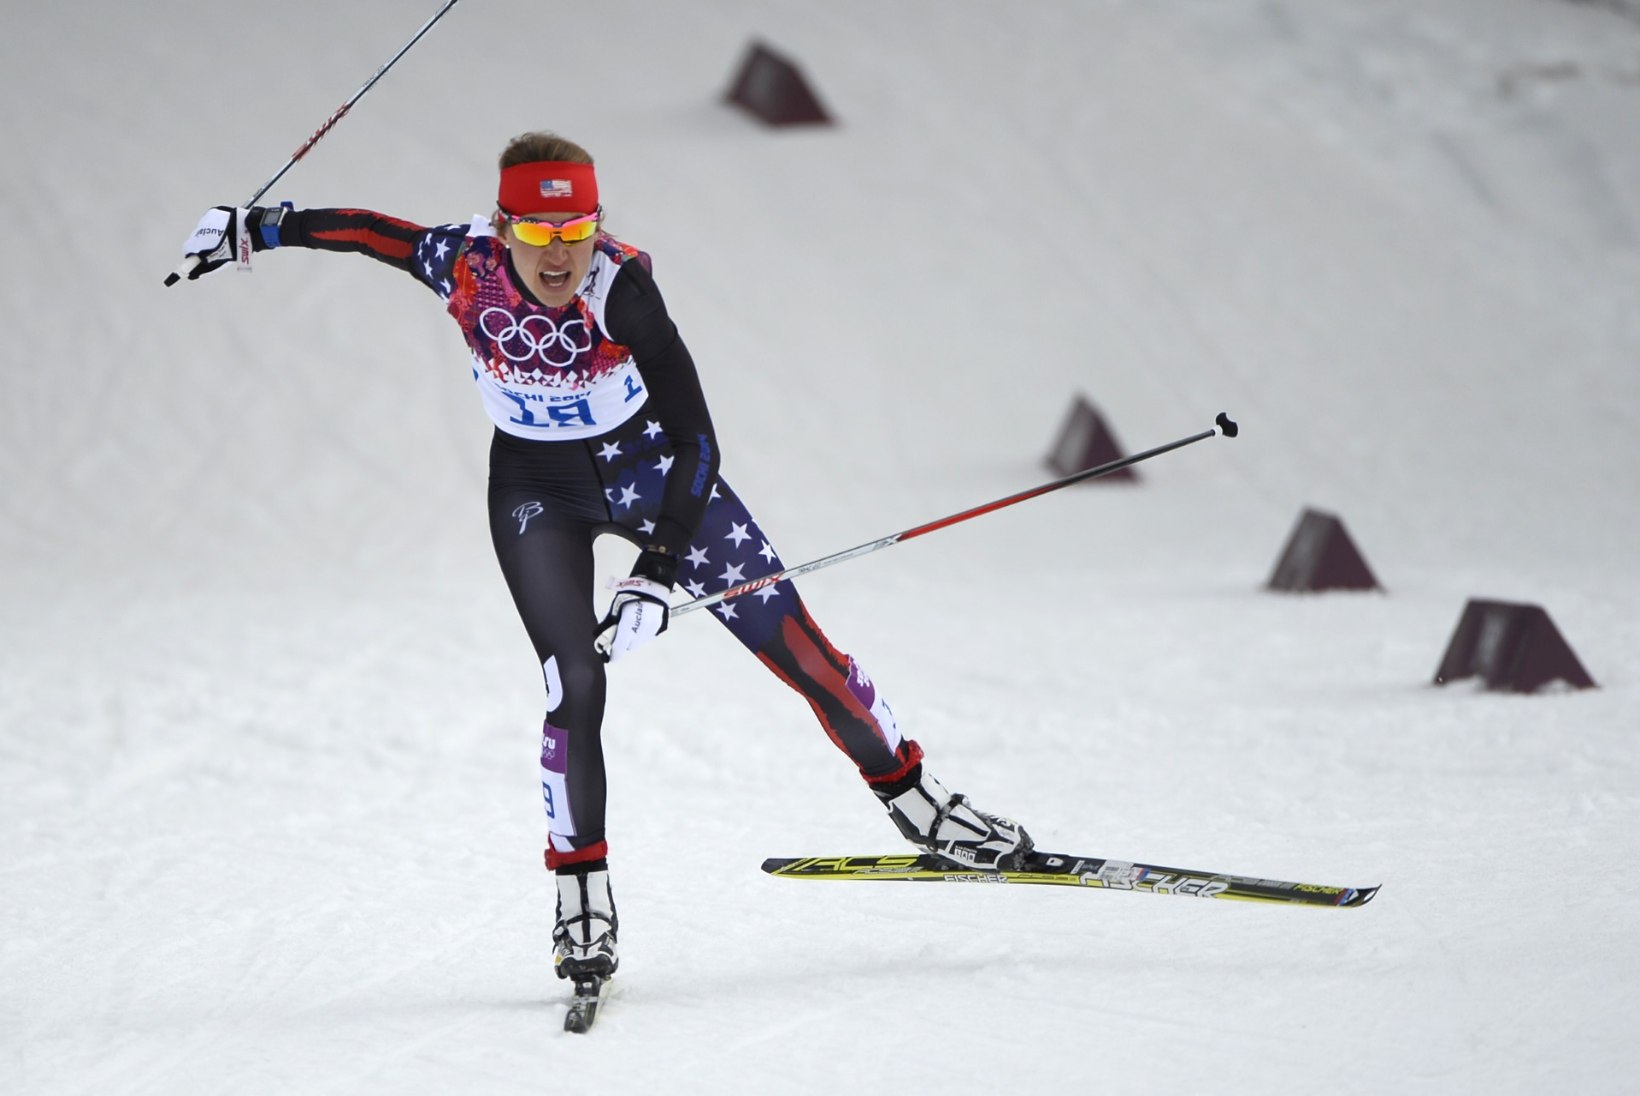 LÕPUKS OMETI! Tour de Ski naiste sprindietapil võidutses ameeriklanna, Johaug jäi esikolmikust välja